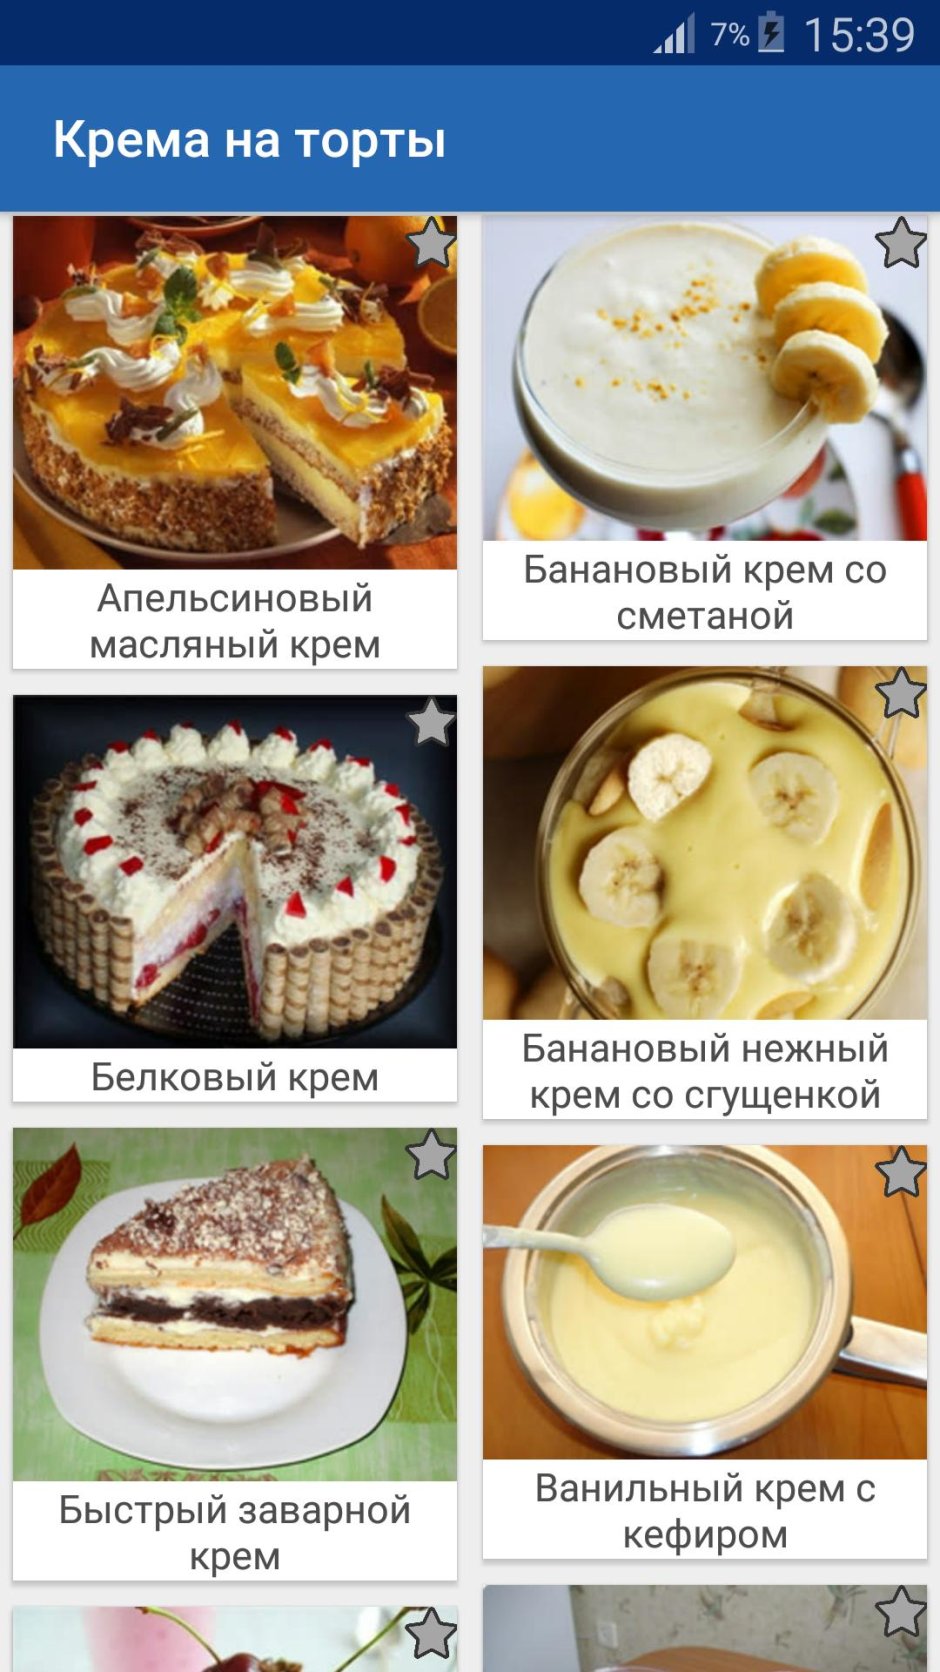 Крема для торта в картинках рецепты